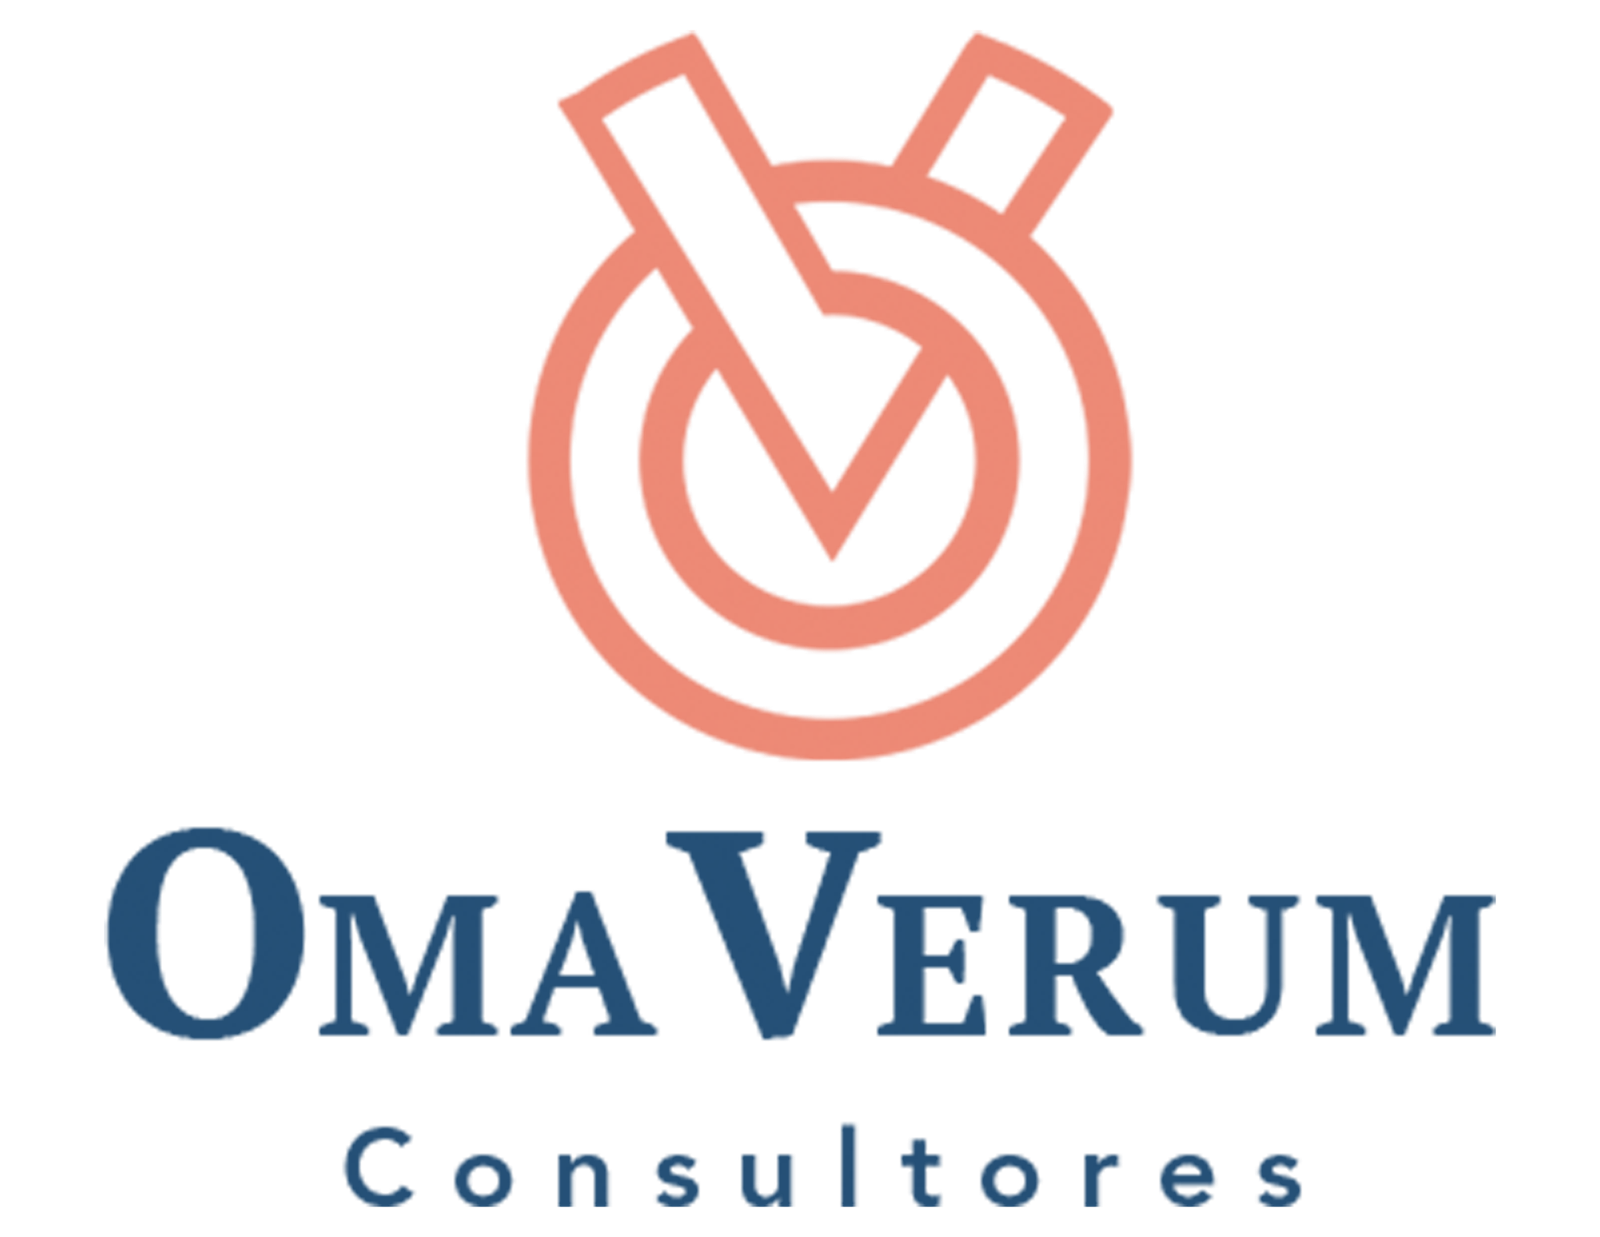 Omaverum consultores